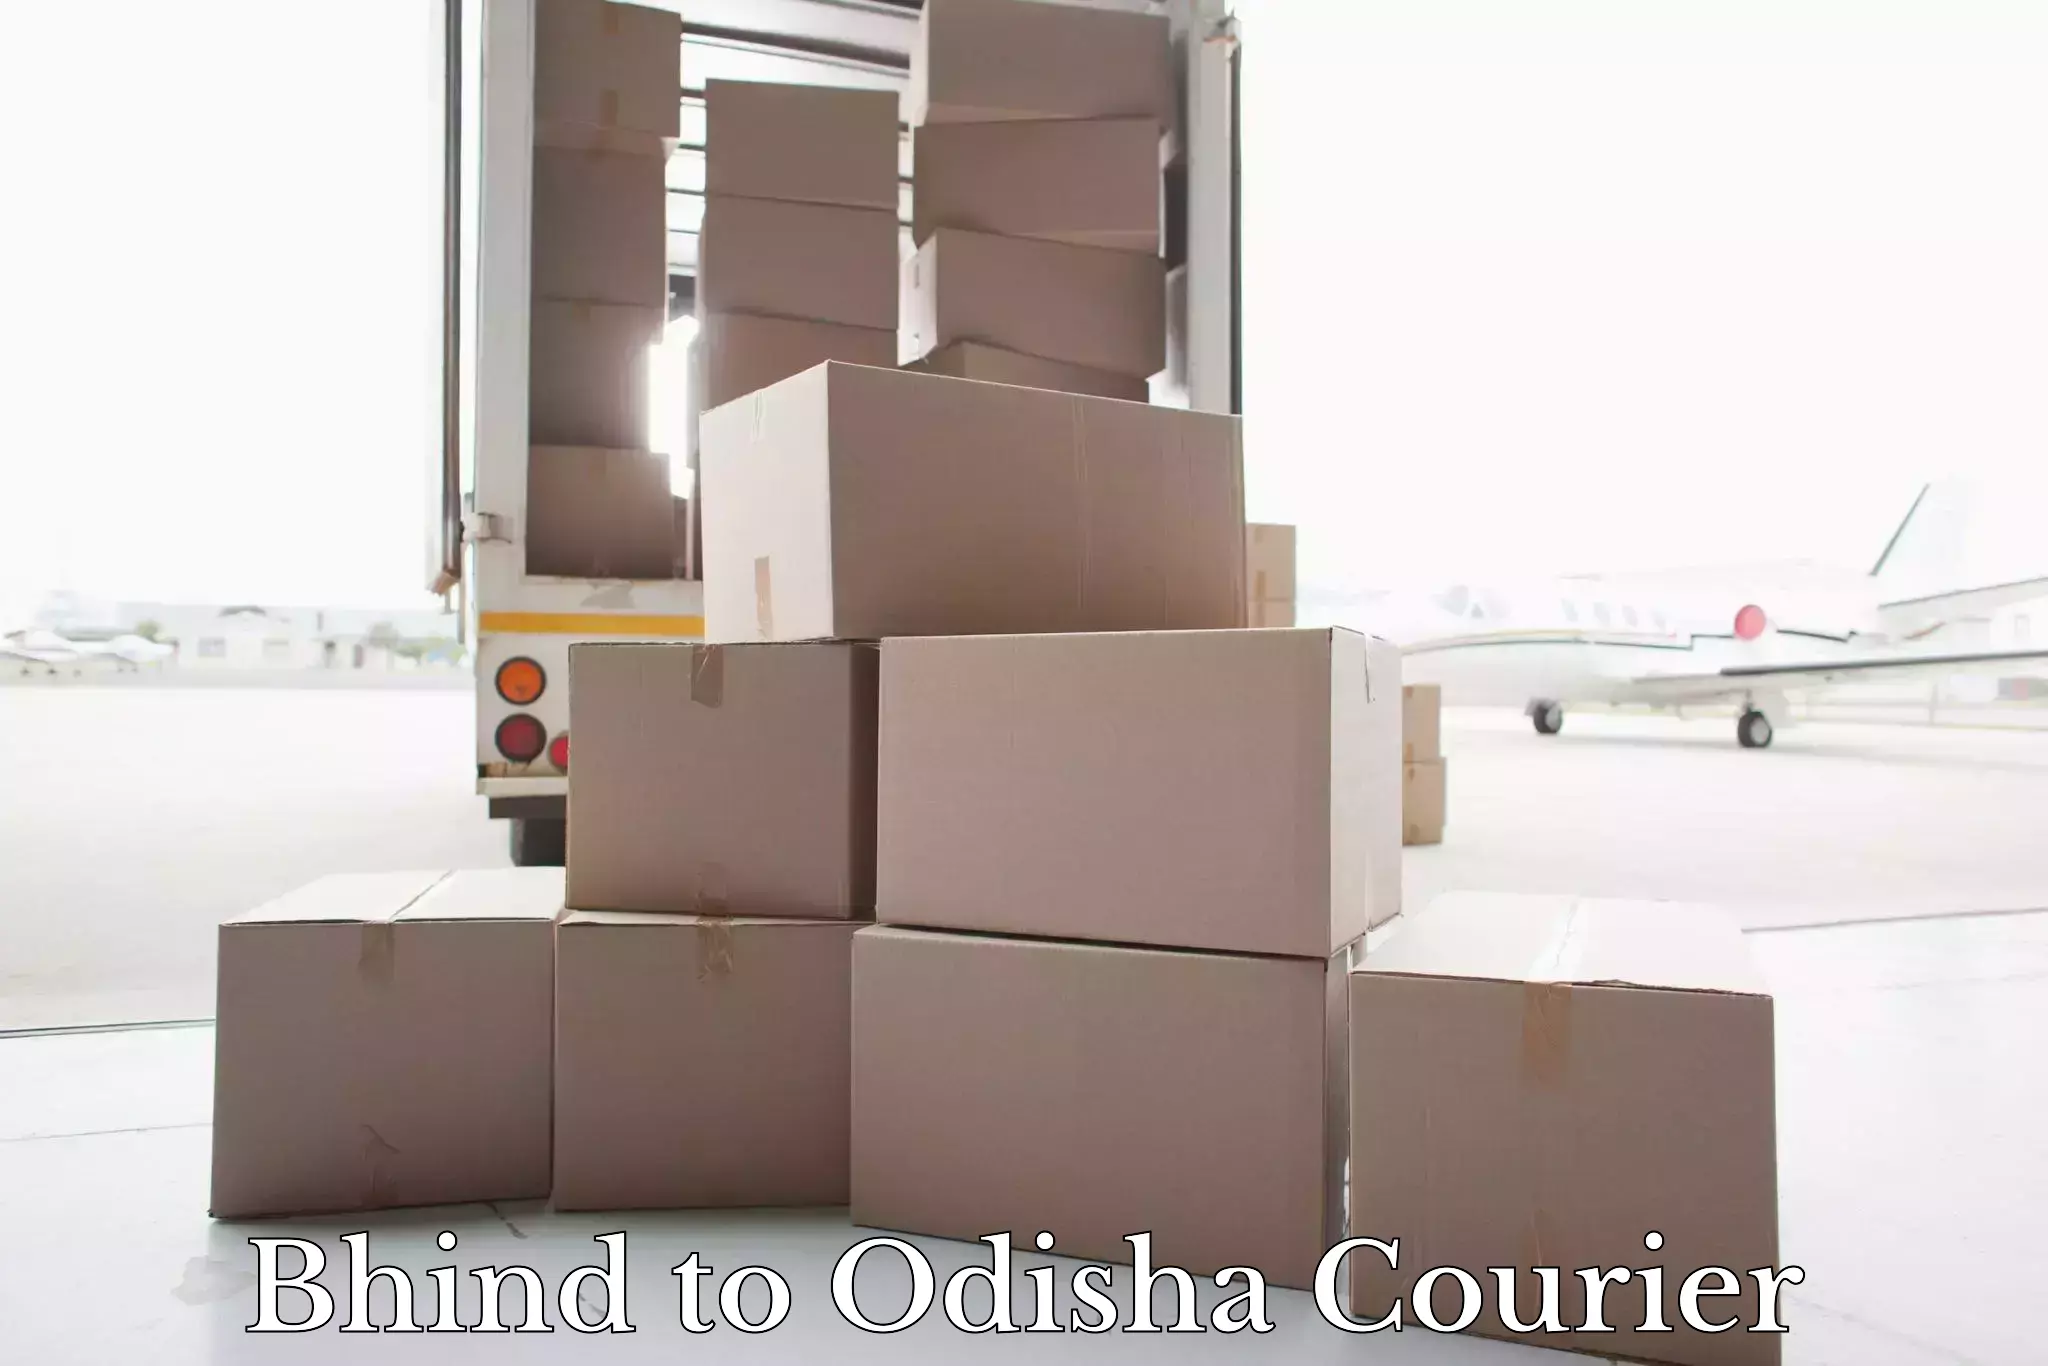 Luggage transport operations Bhind to Odisha